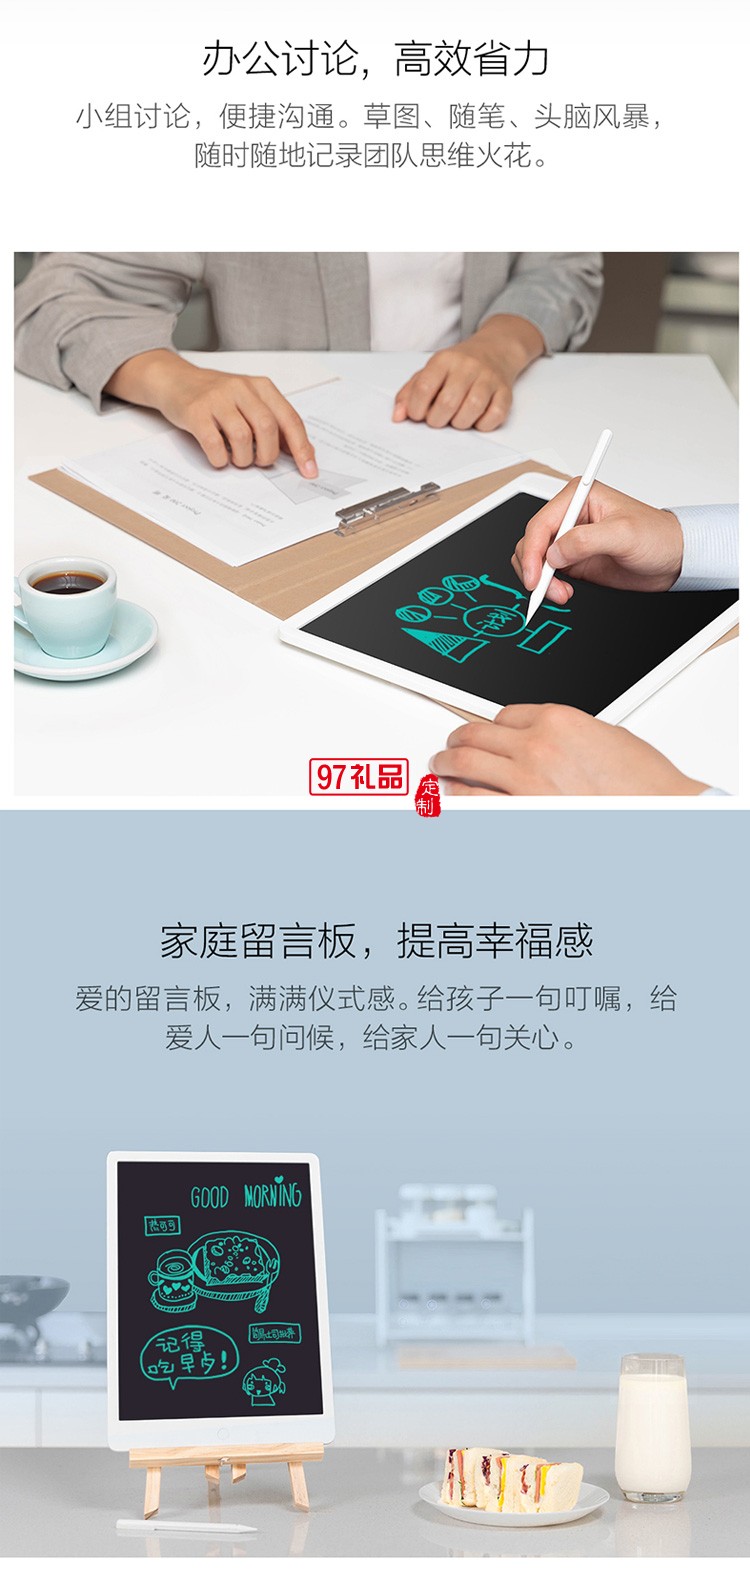 小米米家液晶小黑板13.5儿童绘画绘图手写电子画板定制公司广告礼品